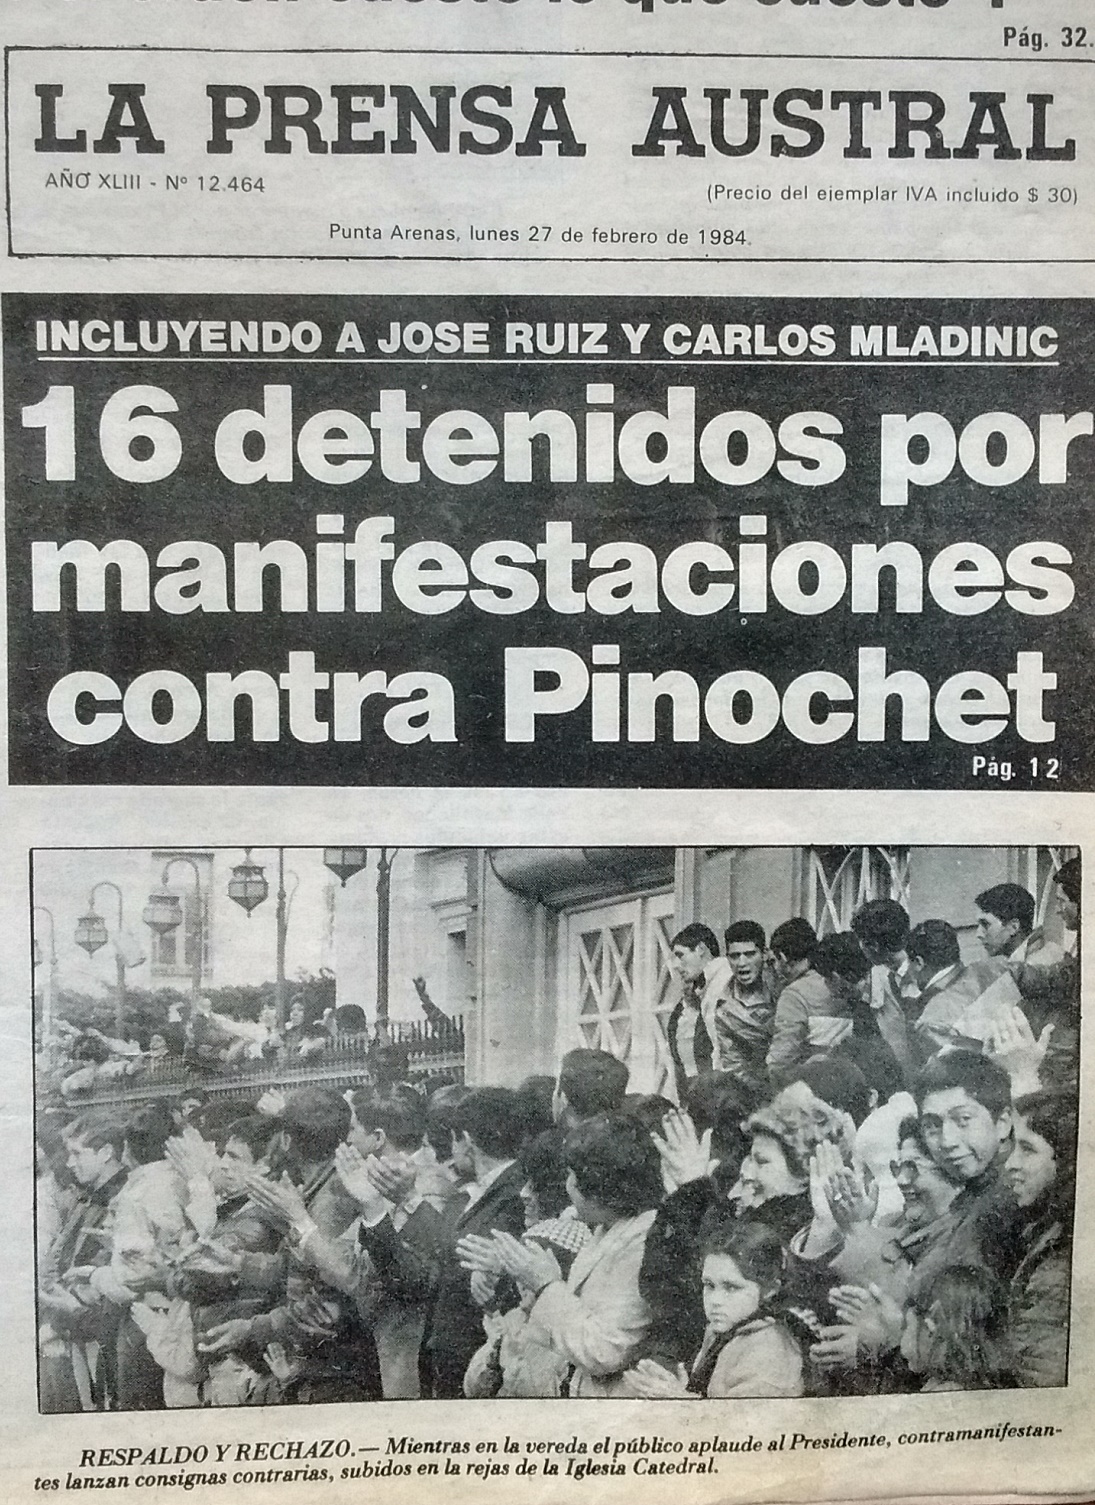 26 de febrero de 1984: el Puntarenazo